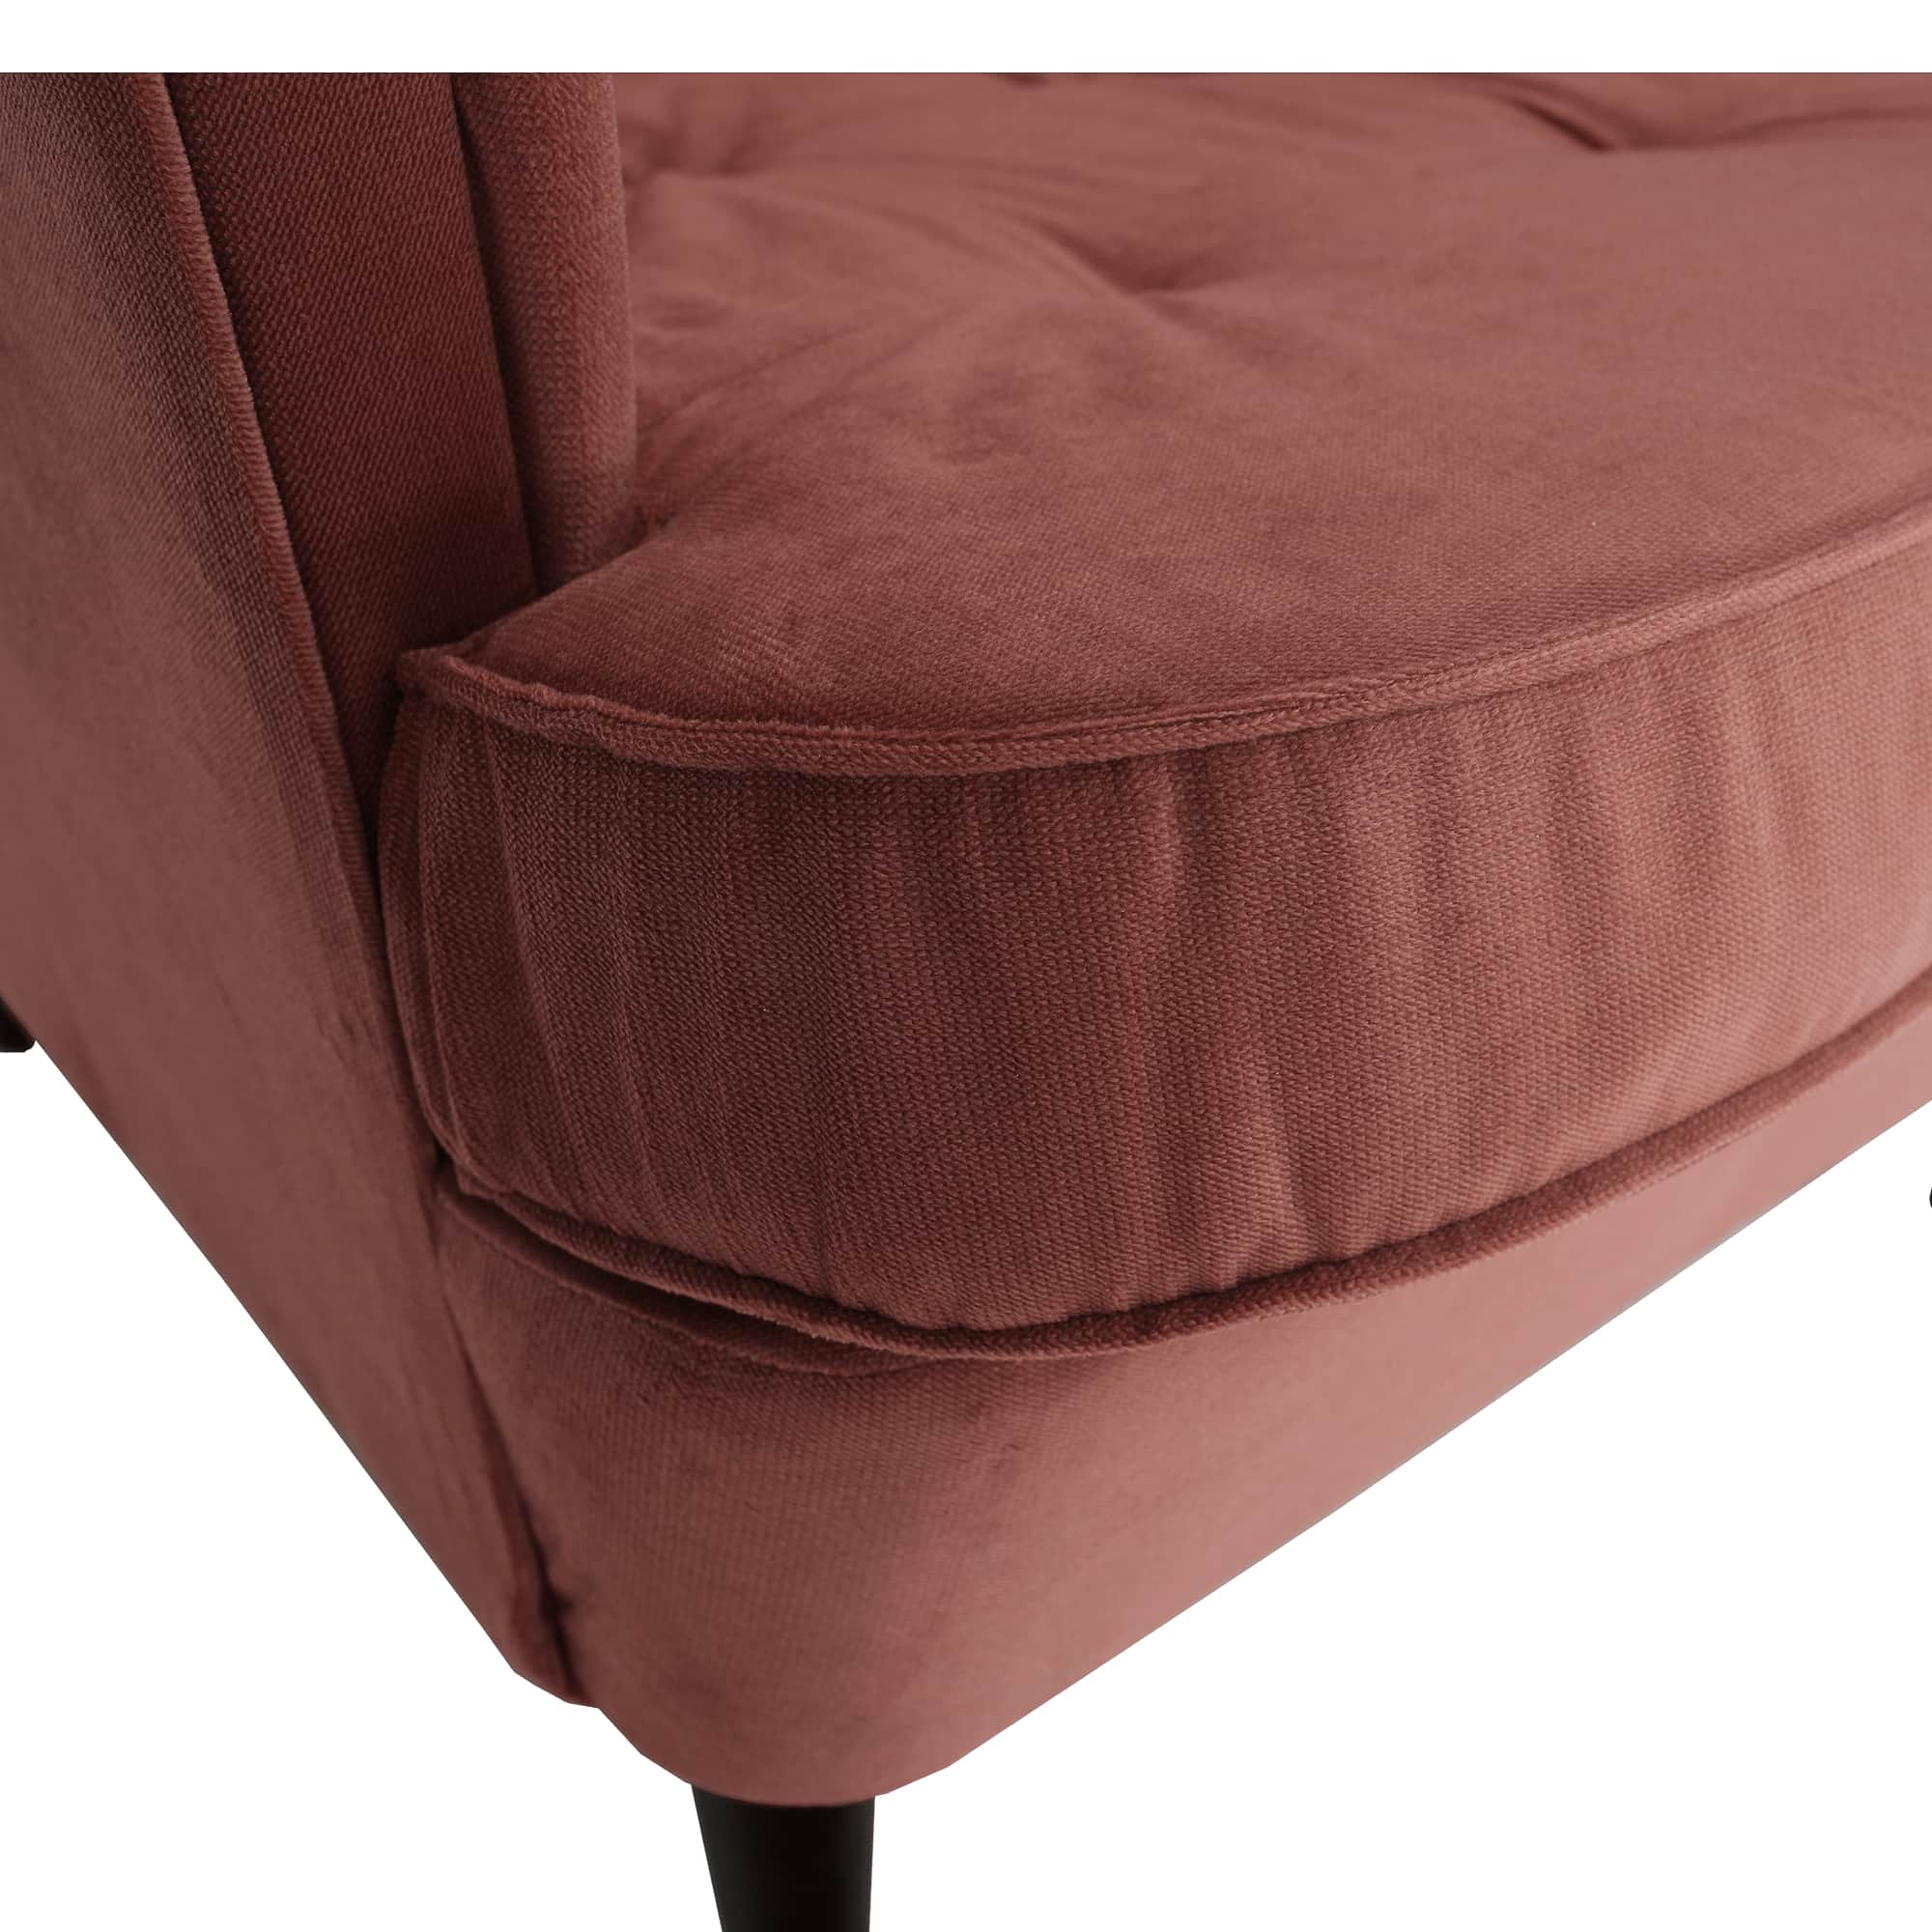 Füles fotel, vén rózsaszín/dió, RUFINO 2 NEW